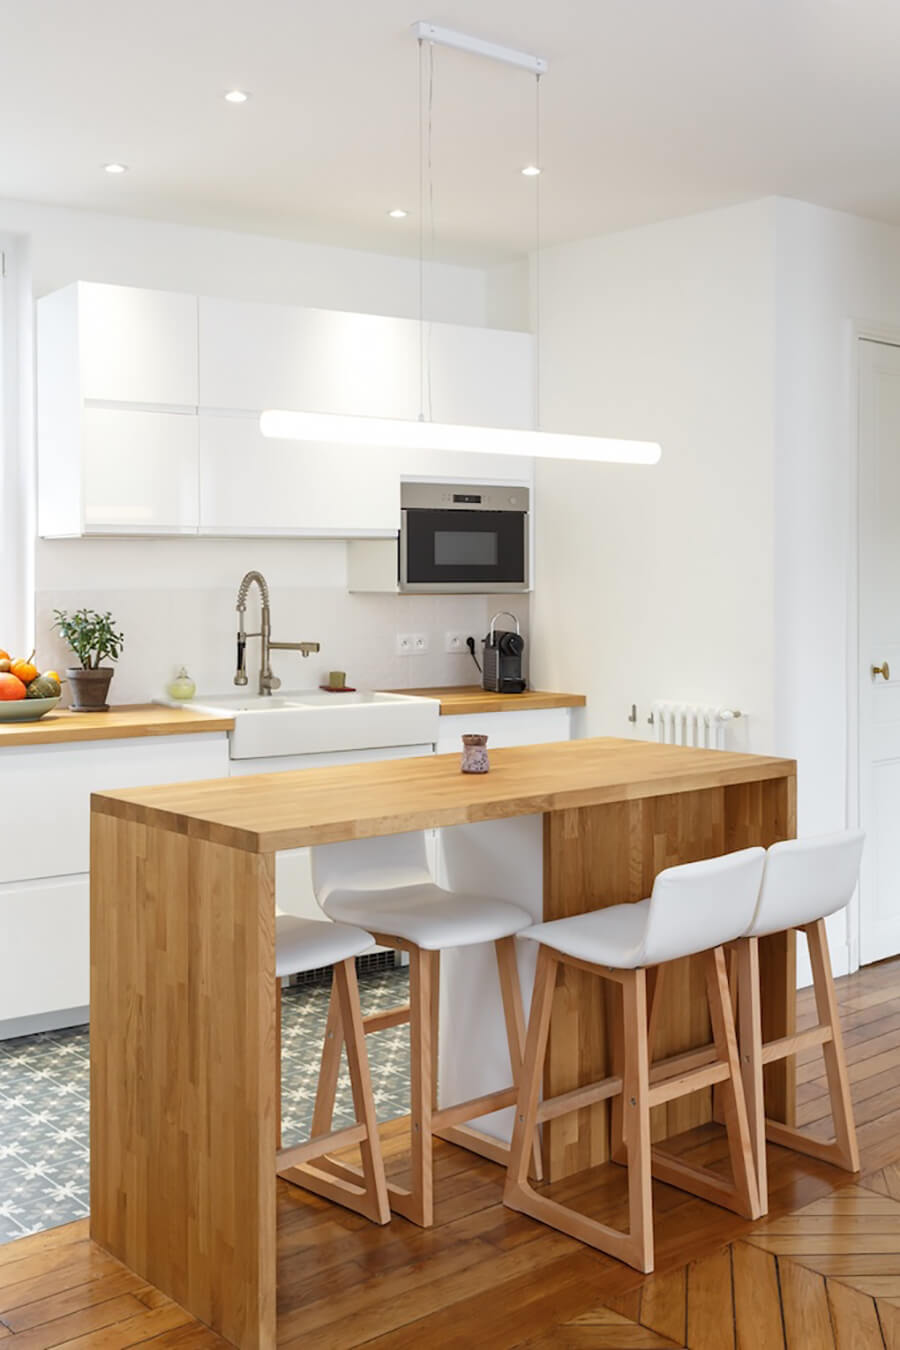 Una cocina abierta o una cocina integrada moderna con una mesa central de madera y pisos altos blancos con patas de madera